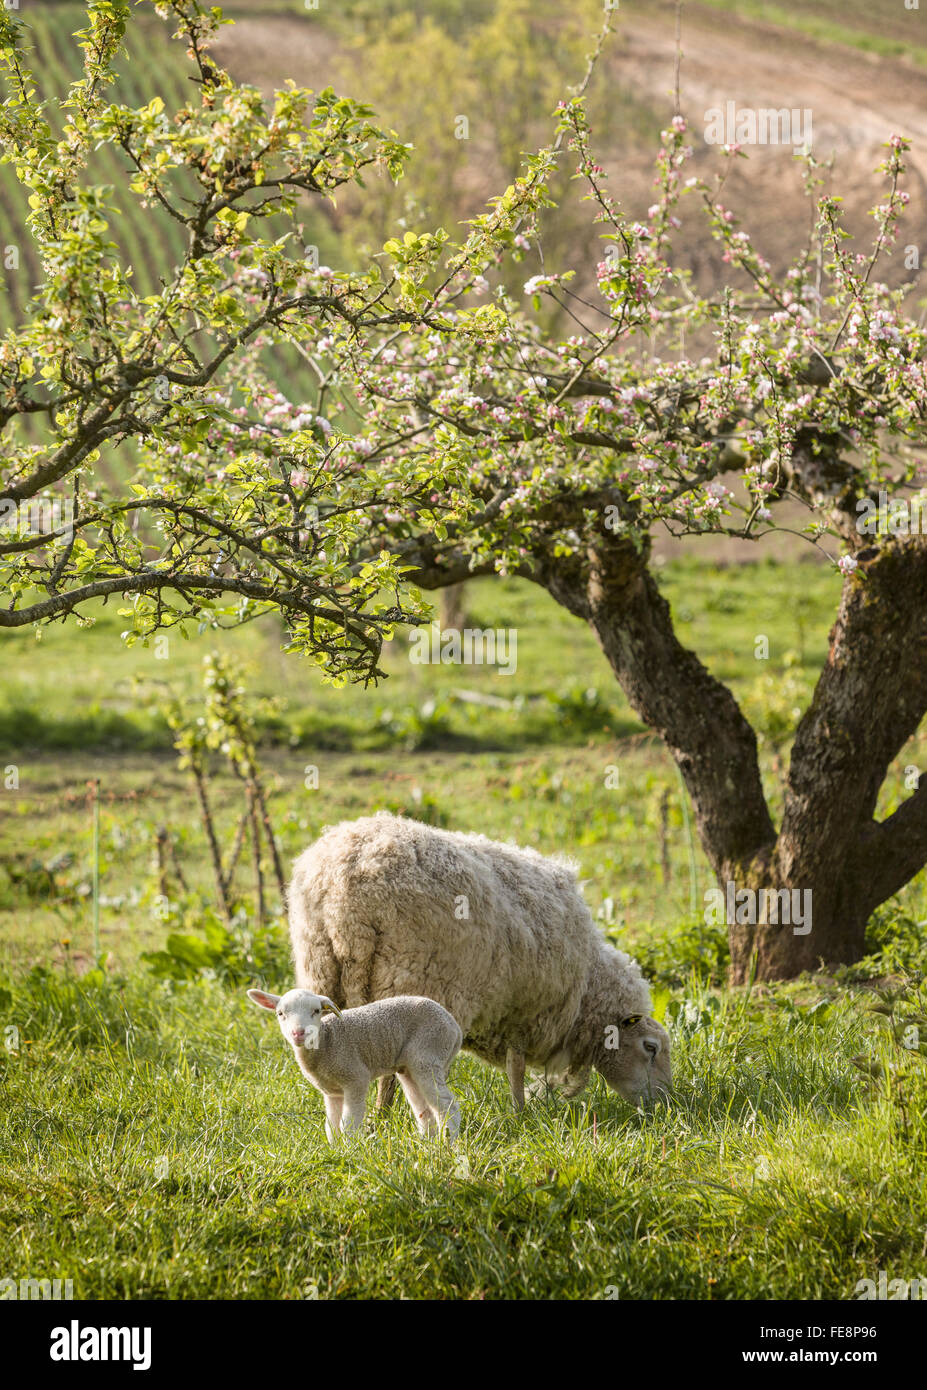 Abbacchio alla ricerca nella fotocamera con madre di ovini, pecora, pascolare nel frutteto. Skane / Scania. Svezia meridionale. La Scandinavia. Foto Stock